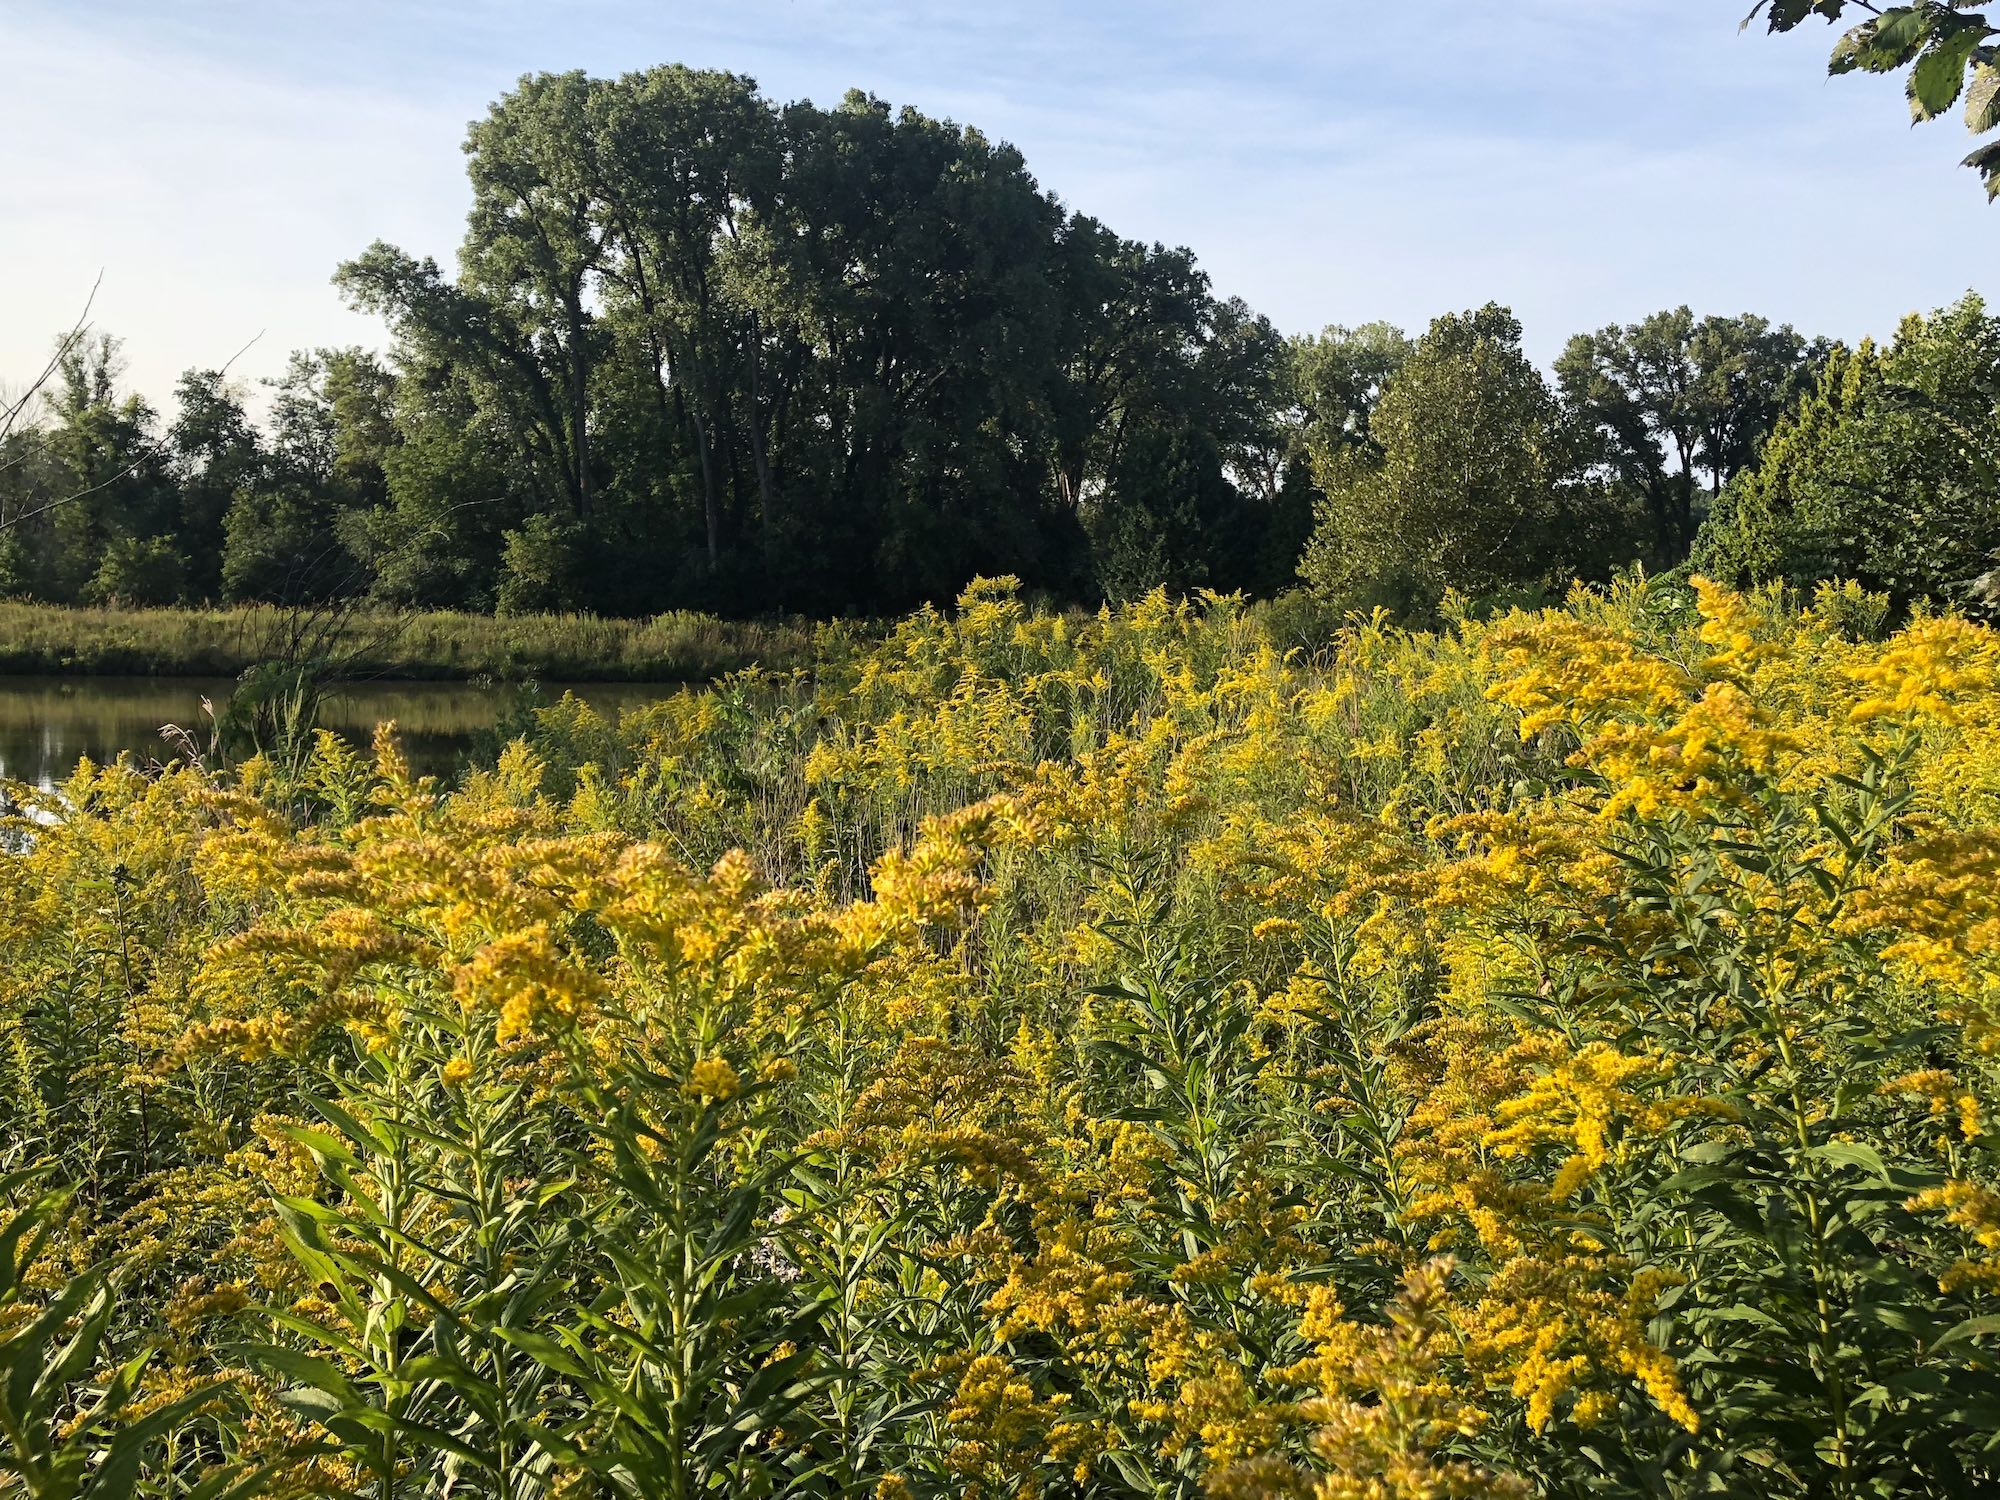 Goldenrod surrounding retaining pond in UW Arboretum on August 31, 2018.